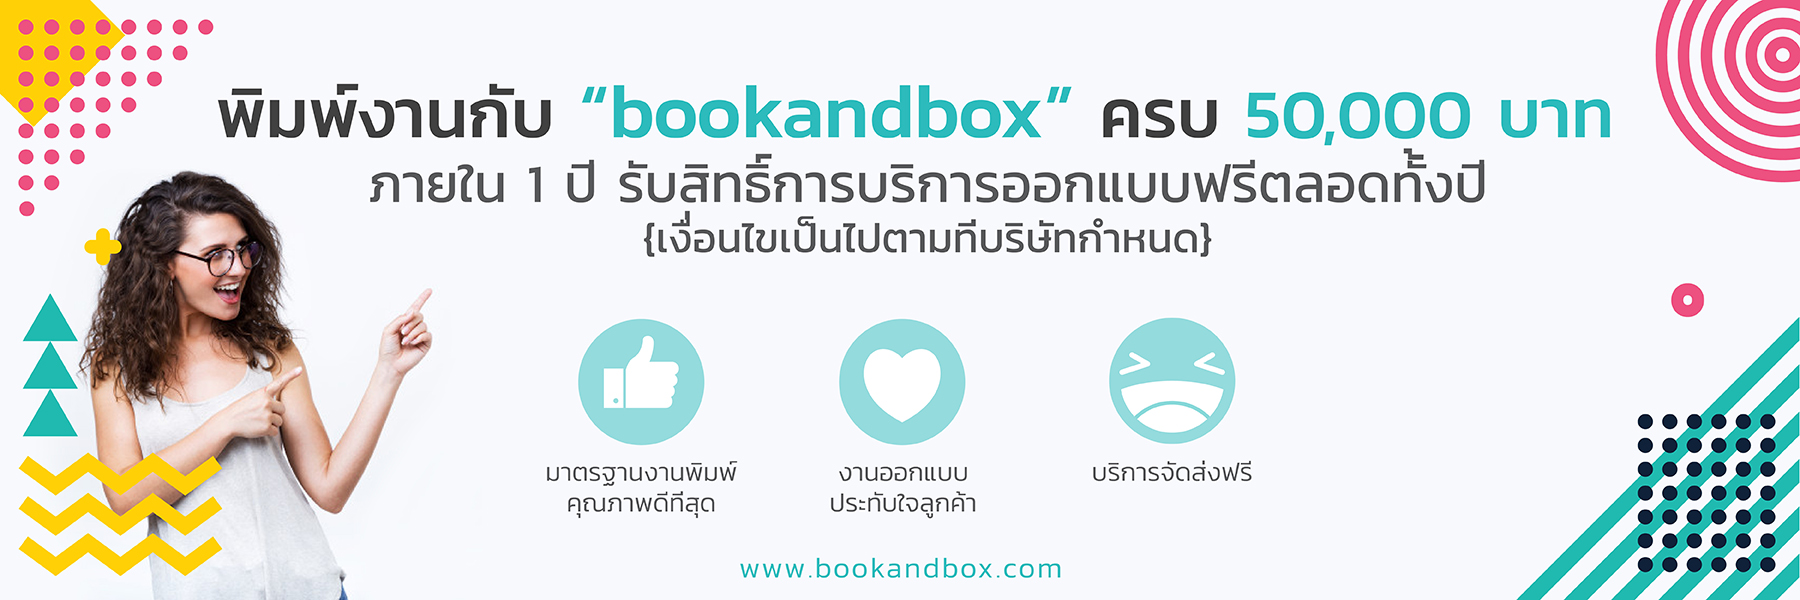 โรงพิมพ์ bookandbox